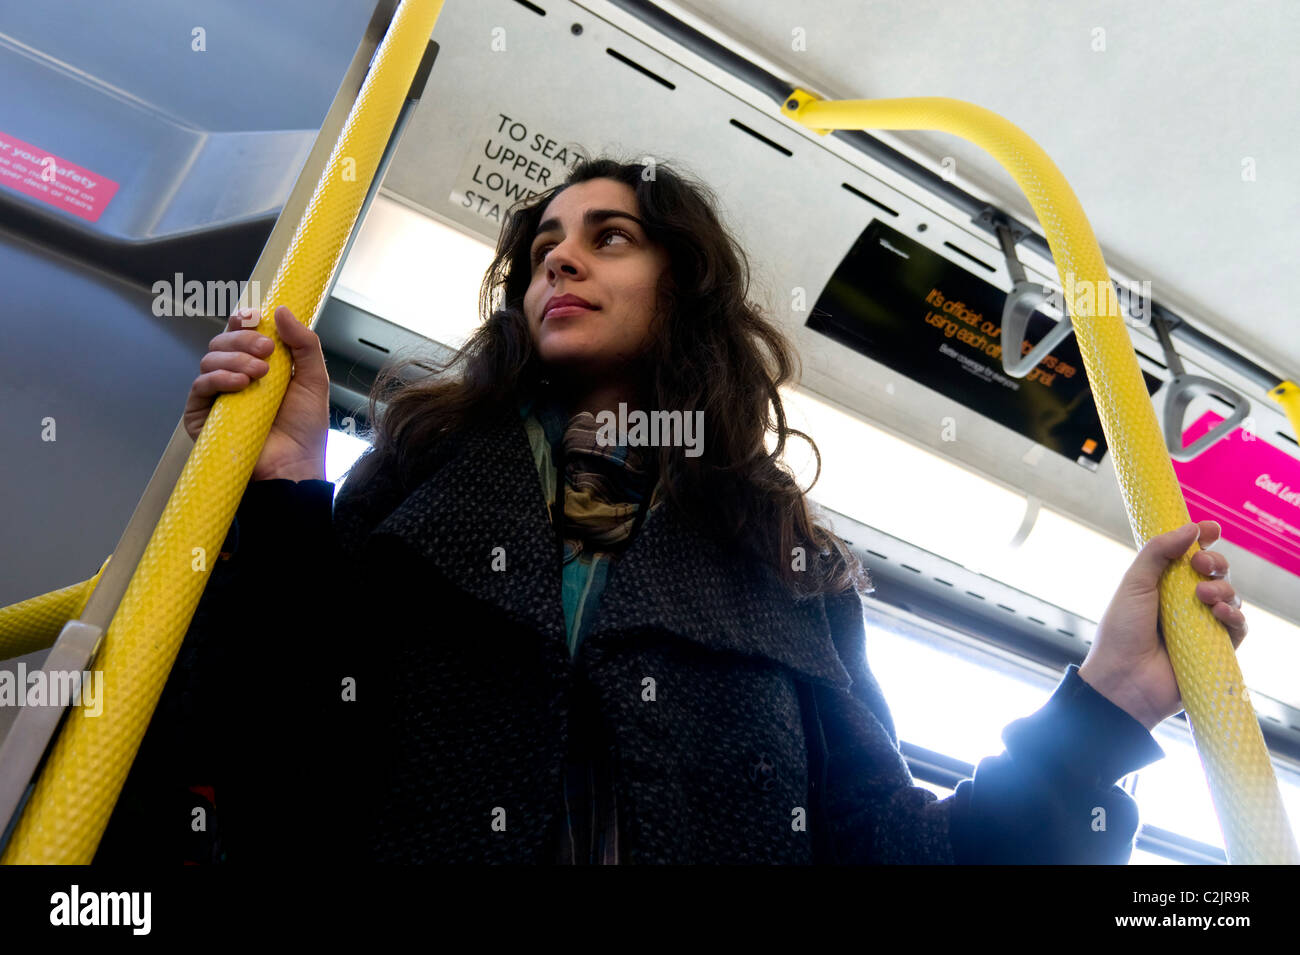 Niedrigen Winkel Blick der jungen Frau auf einem Londoner bus Stockfoto